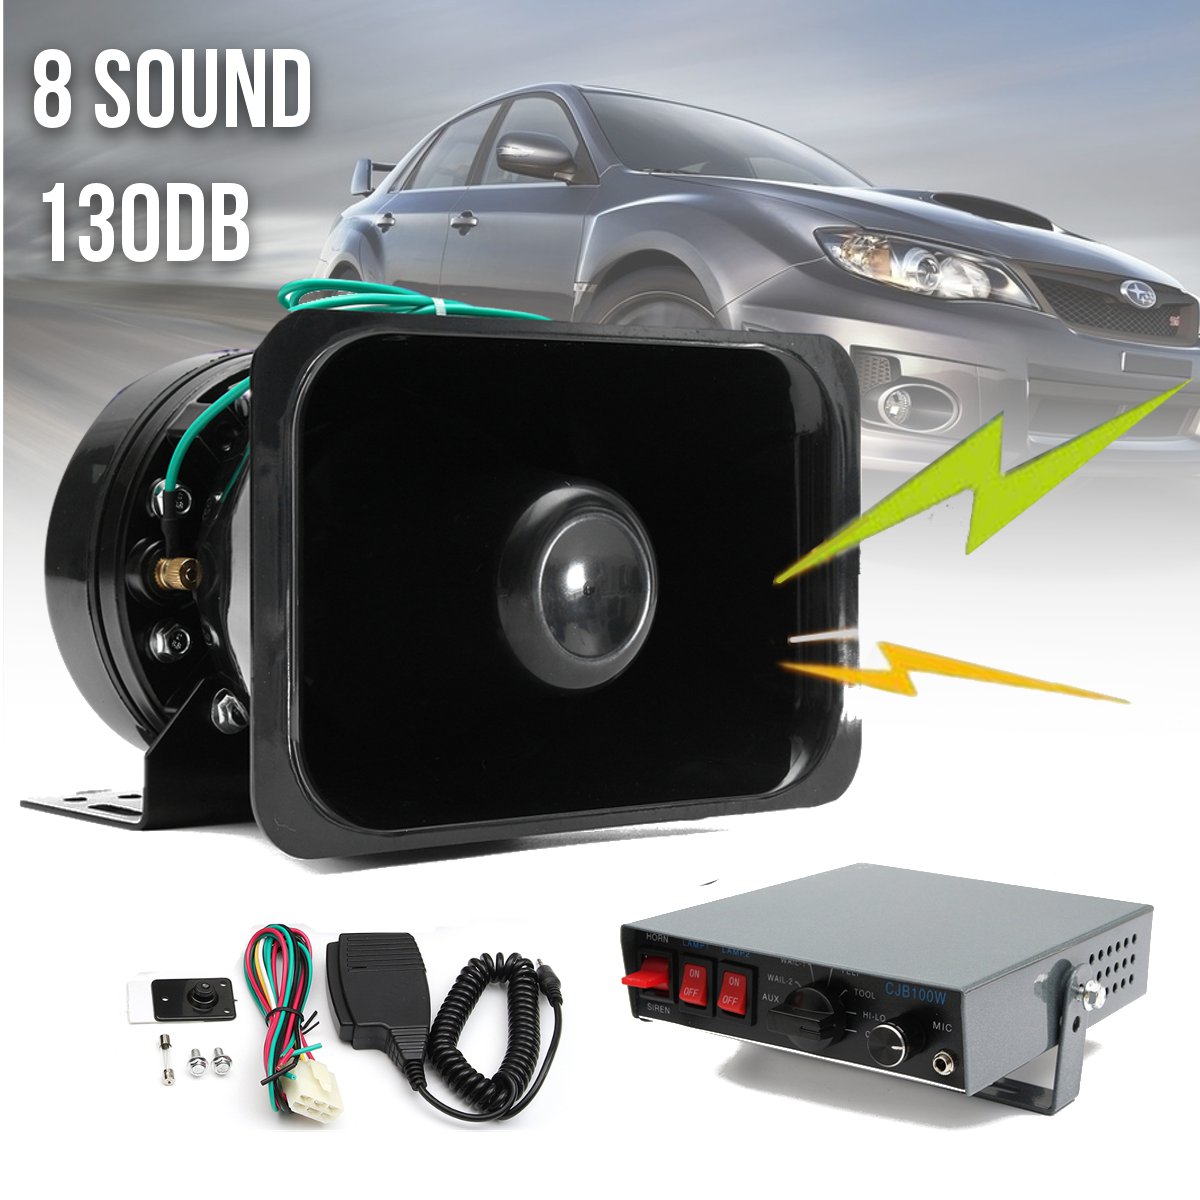 12V-8-Sound-Car-Truck-Warning-Alarm-Loud-Speaker-Siren-Horn-MIC-System-Megaphone-1365629